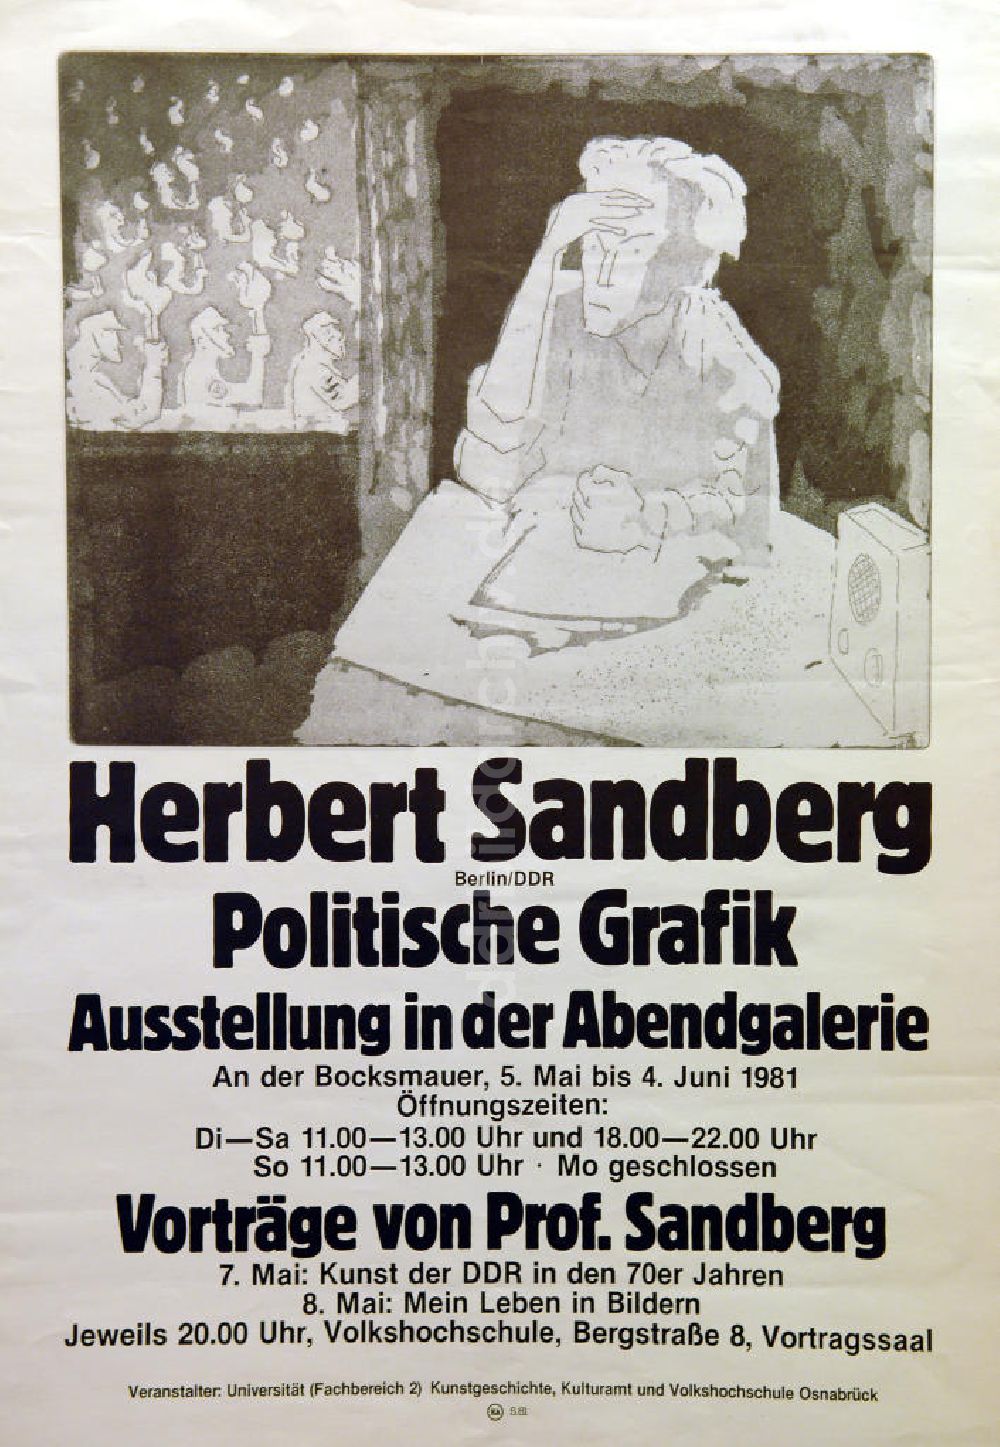 Berlin: Plakat von der Ausstellung Herbert Sandberg (Berlin/DDR) Politische Grafik aus dem Jahr 1981